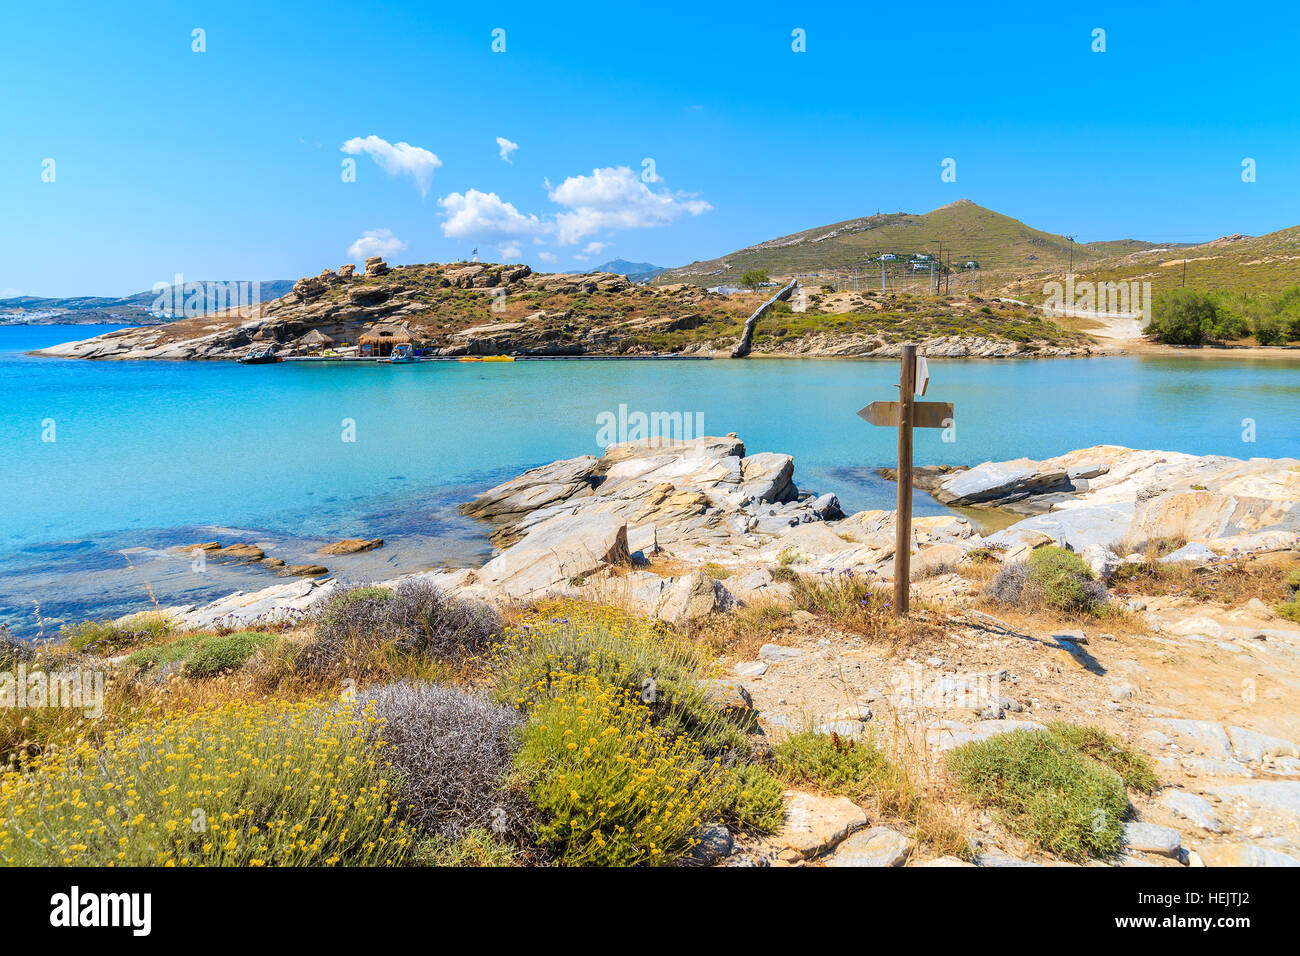 Beau sentier littoral le long d'une mer cristalline de l'eau dans la baie de Monastiri sur l'île de Paros, Grèce Banque D'Images